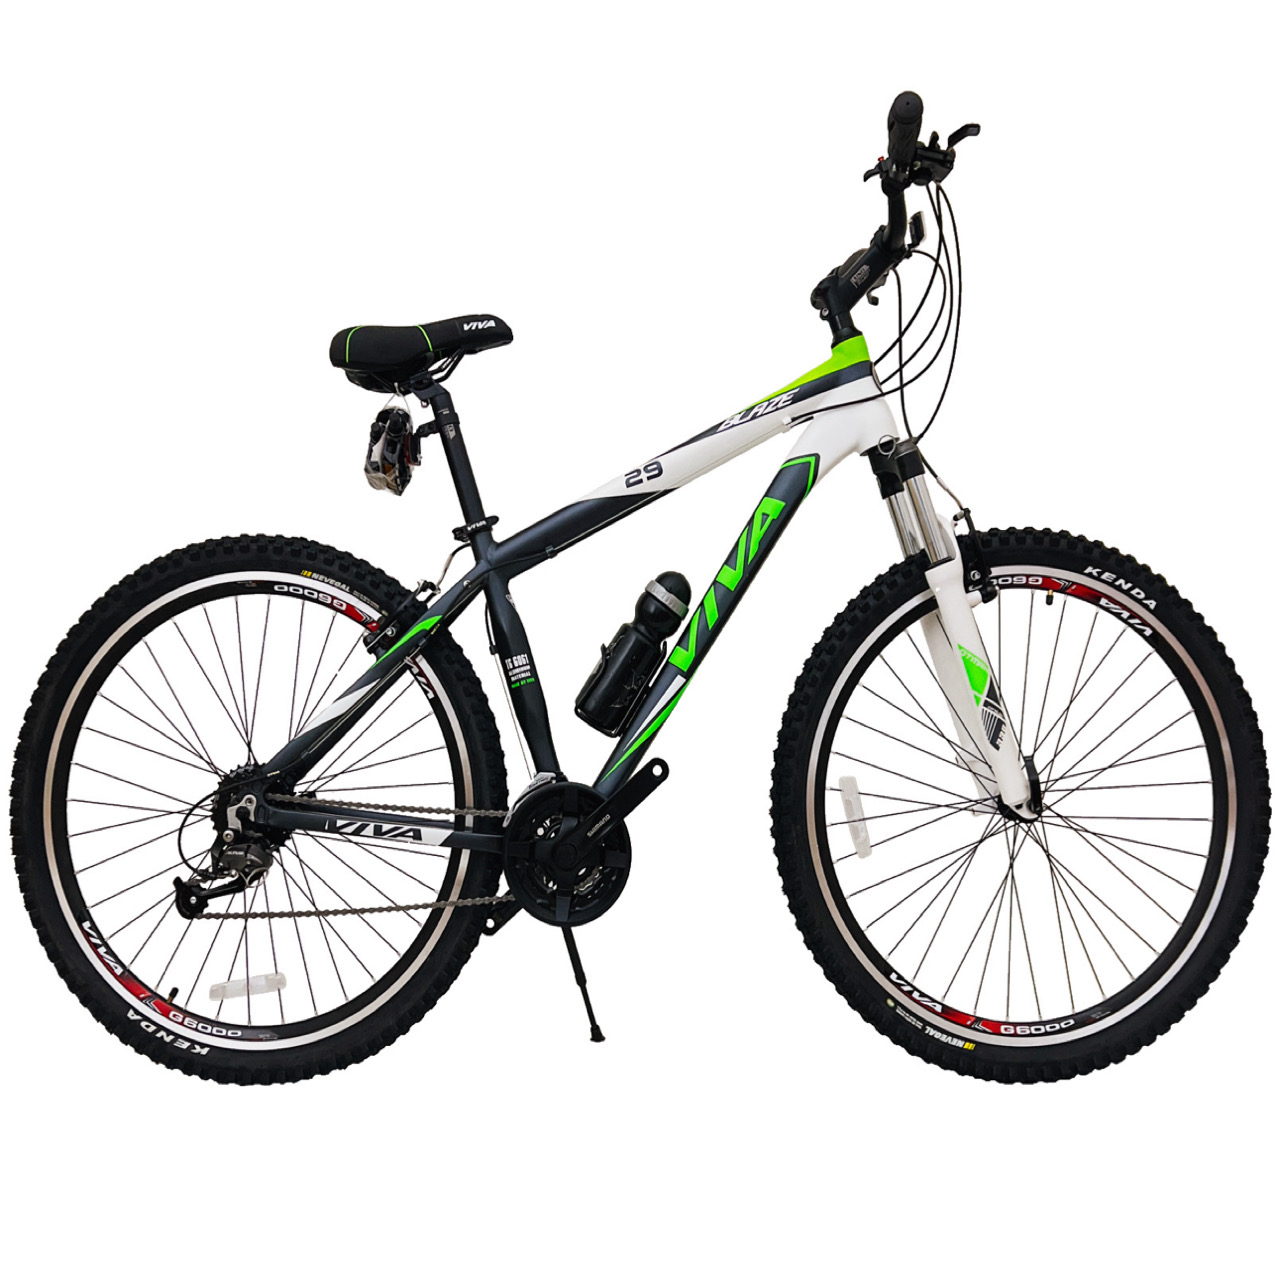 نکته خرید - قیمت روز دوچرخه کوهستان ویوا مدل BLAZE کد 200 سایز طوقه 29 خرید